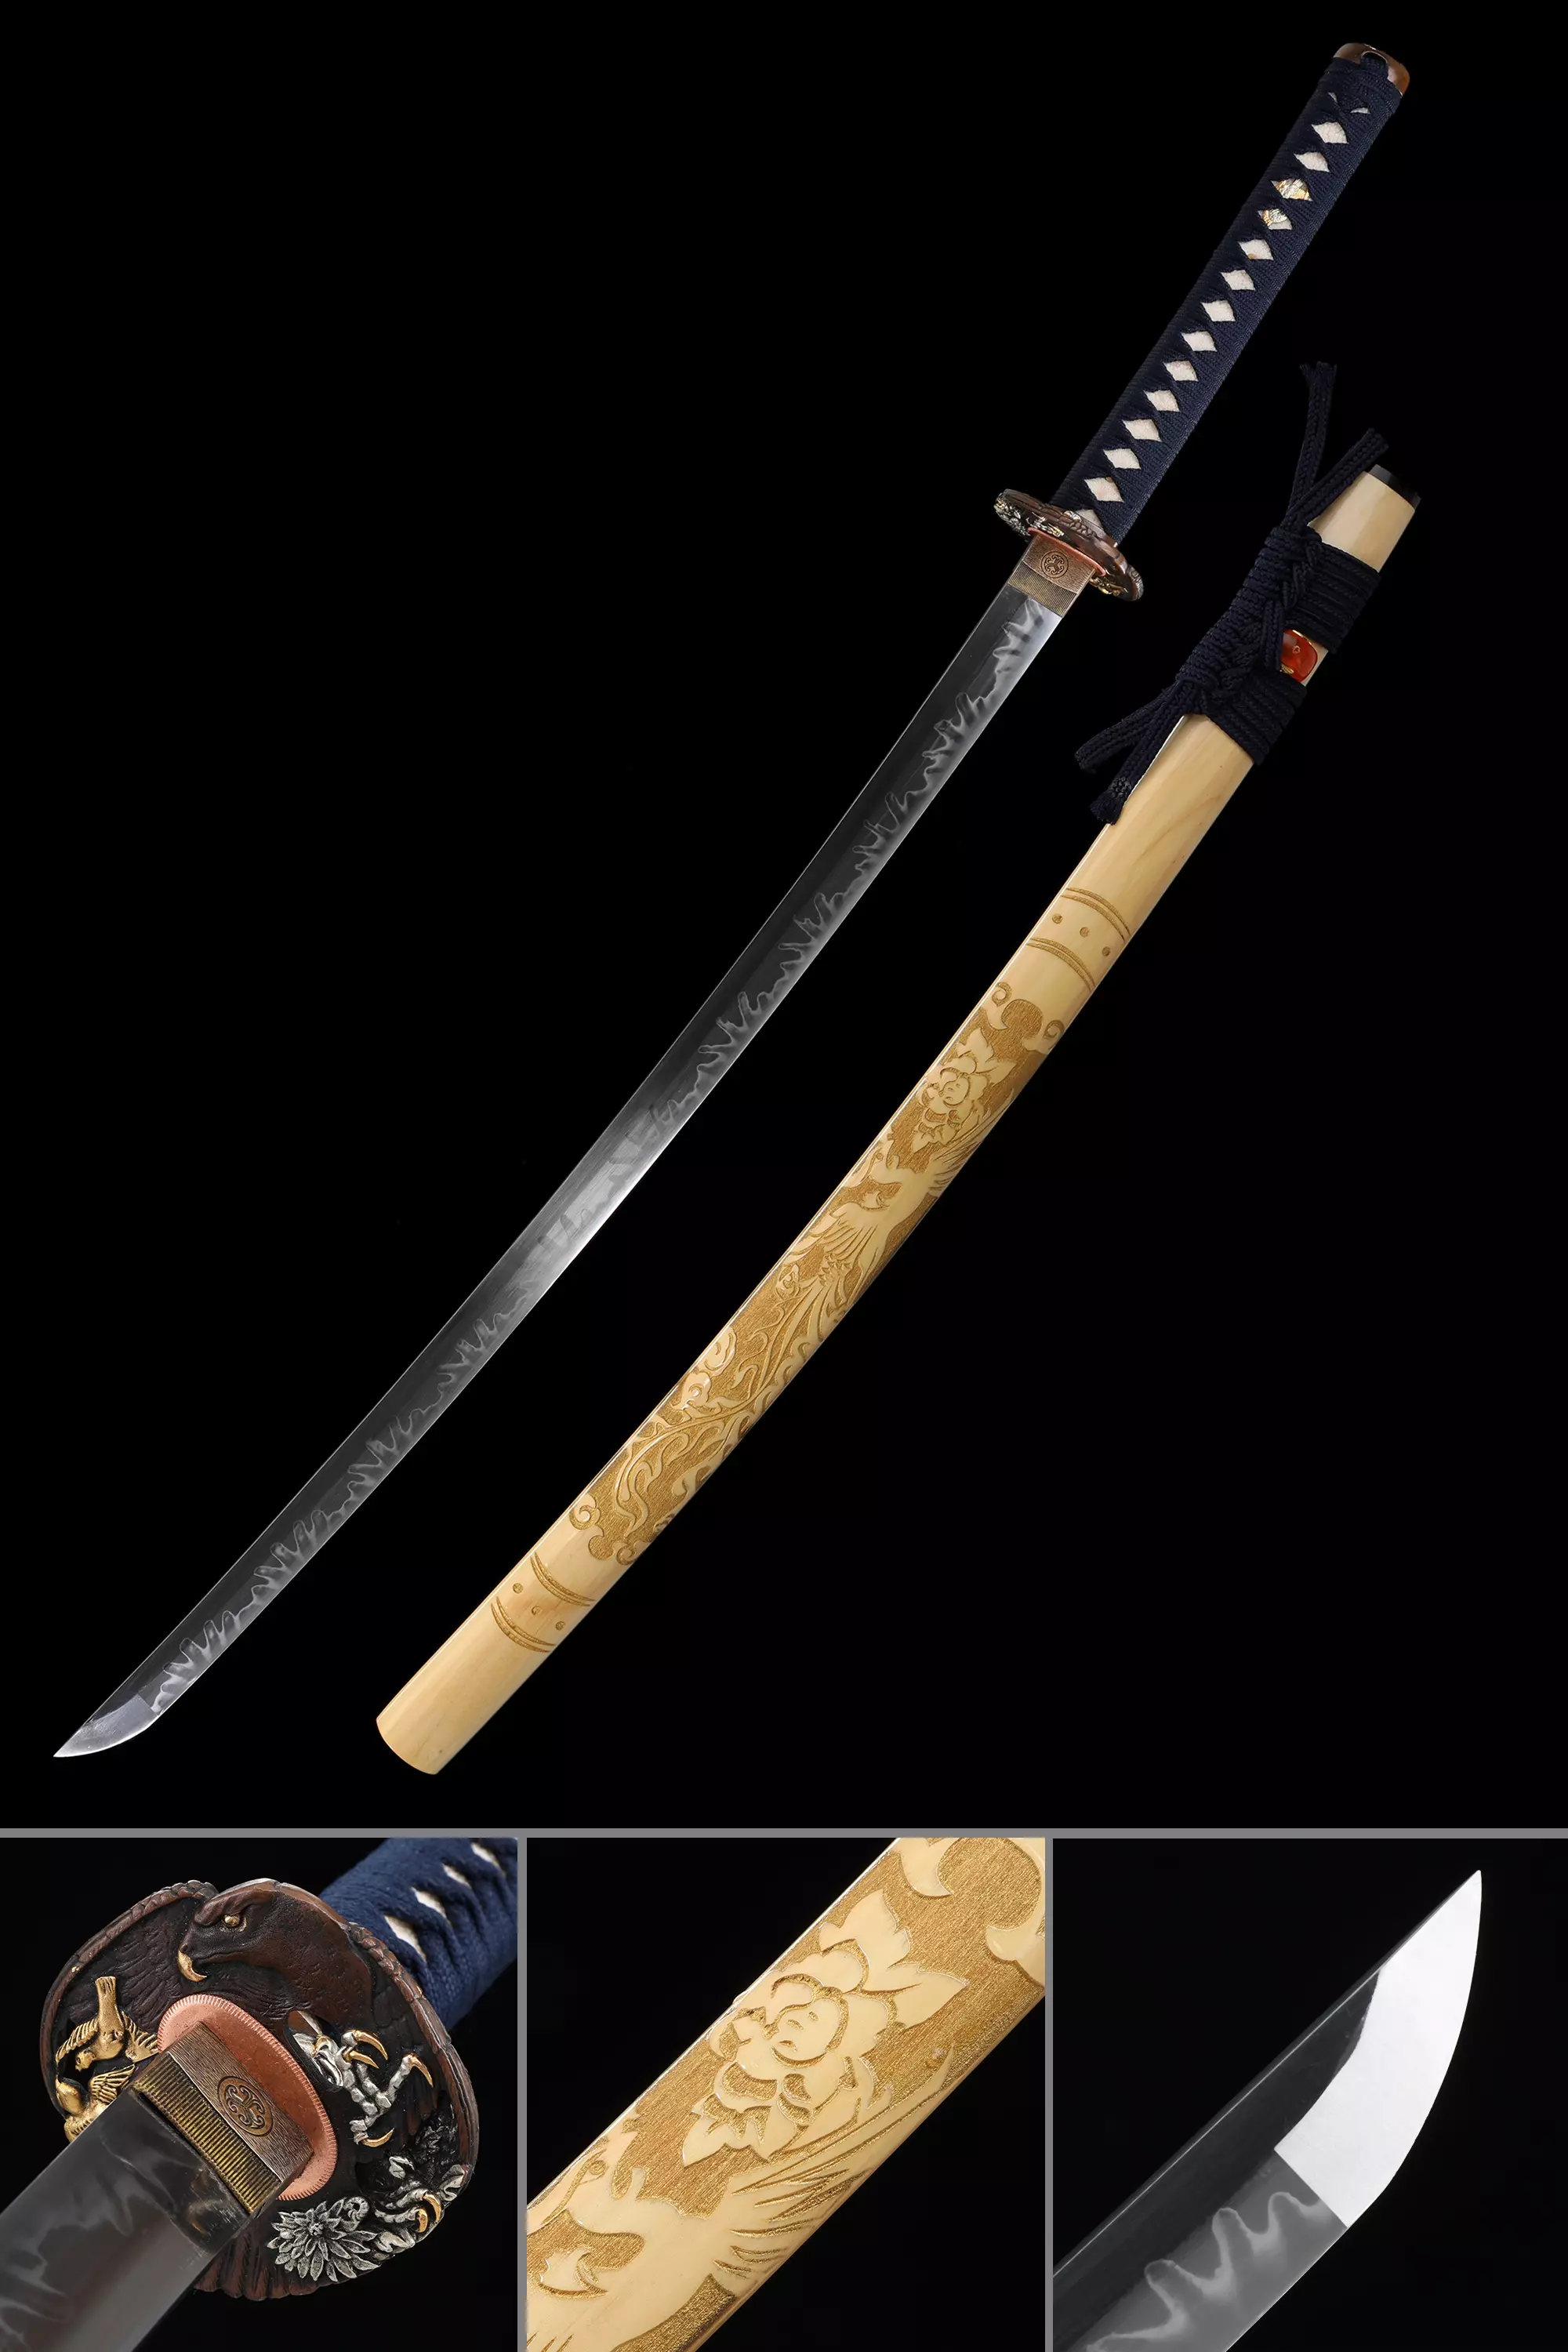 Download Anime Samurai Sword Wallpaper | Wallpapers.com